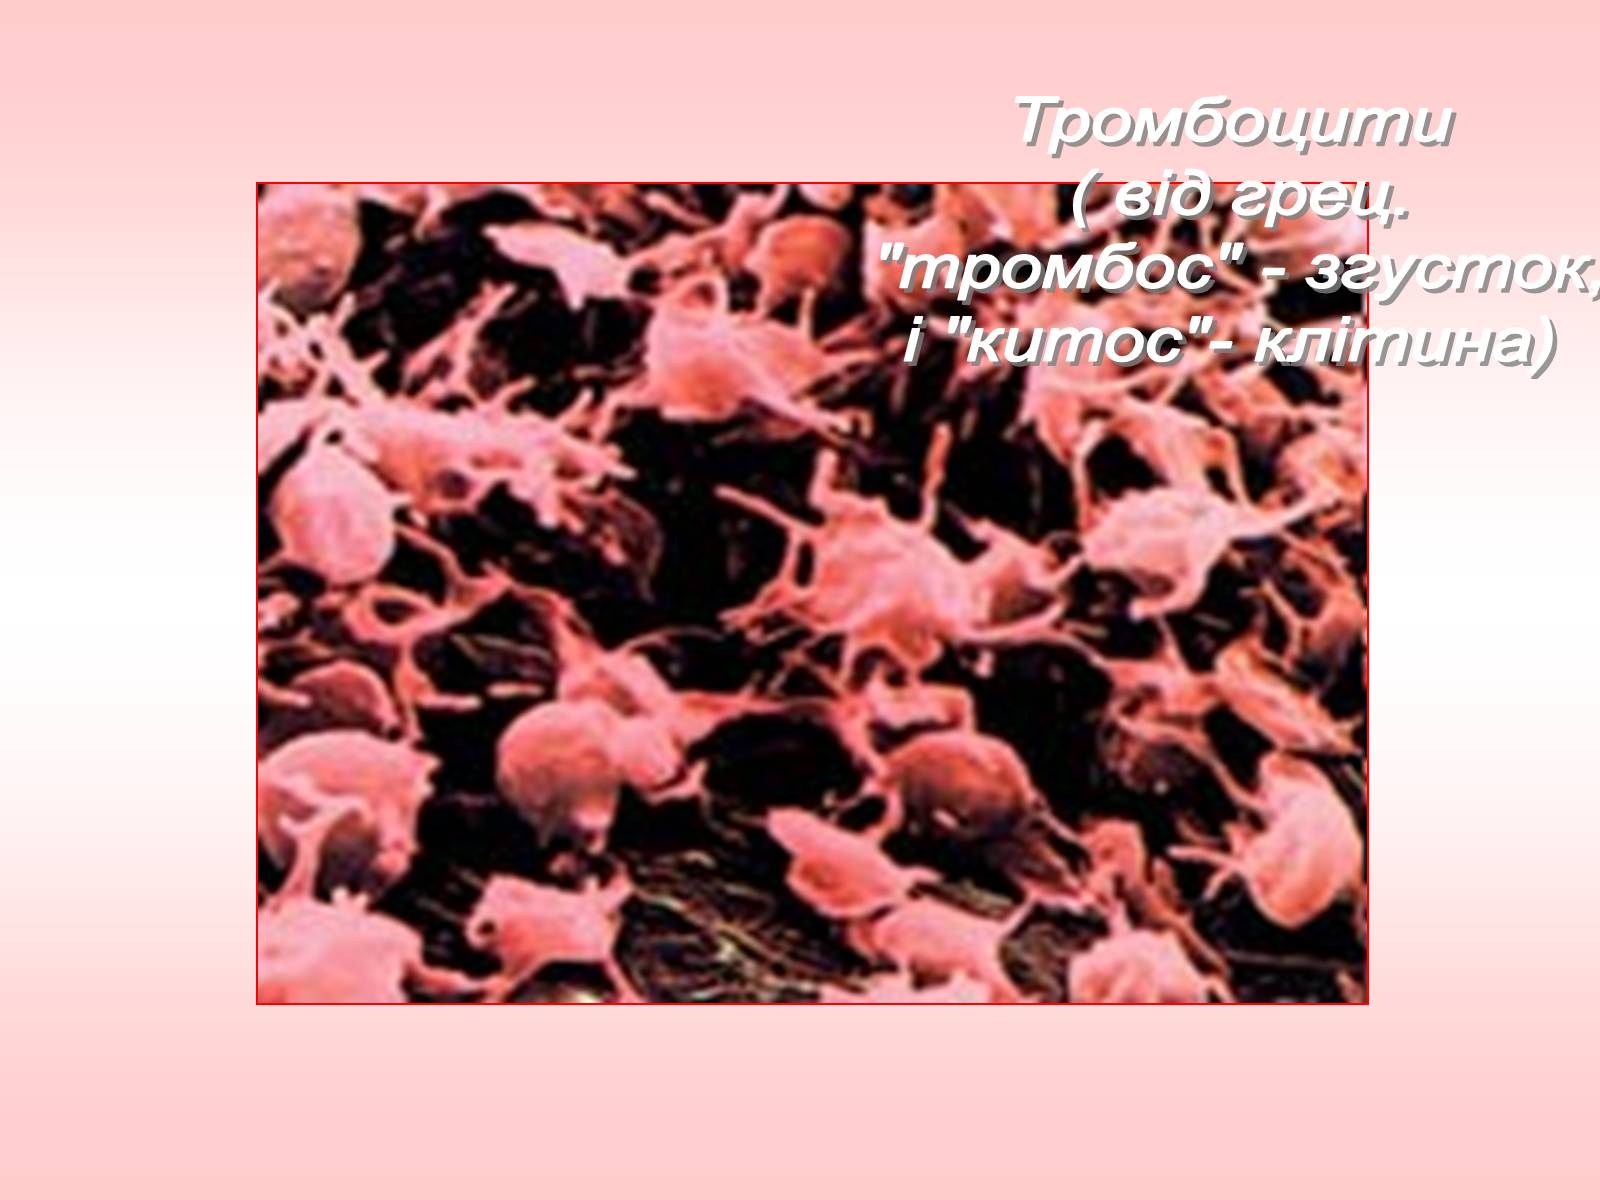 Фермент тромбоцитов. Гемокоагуляция тромбоциты. Образование тромбоцитов из мегакариоцитов. Рецепторы тромбоцитов. Ферменты тромбоцитов.